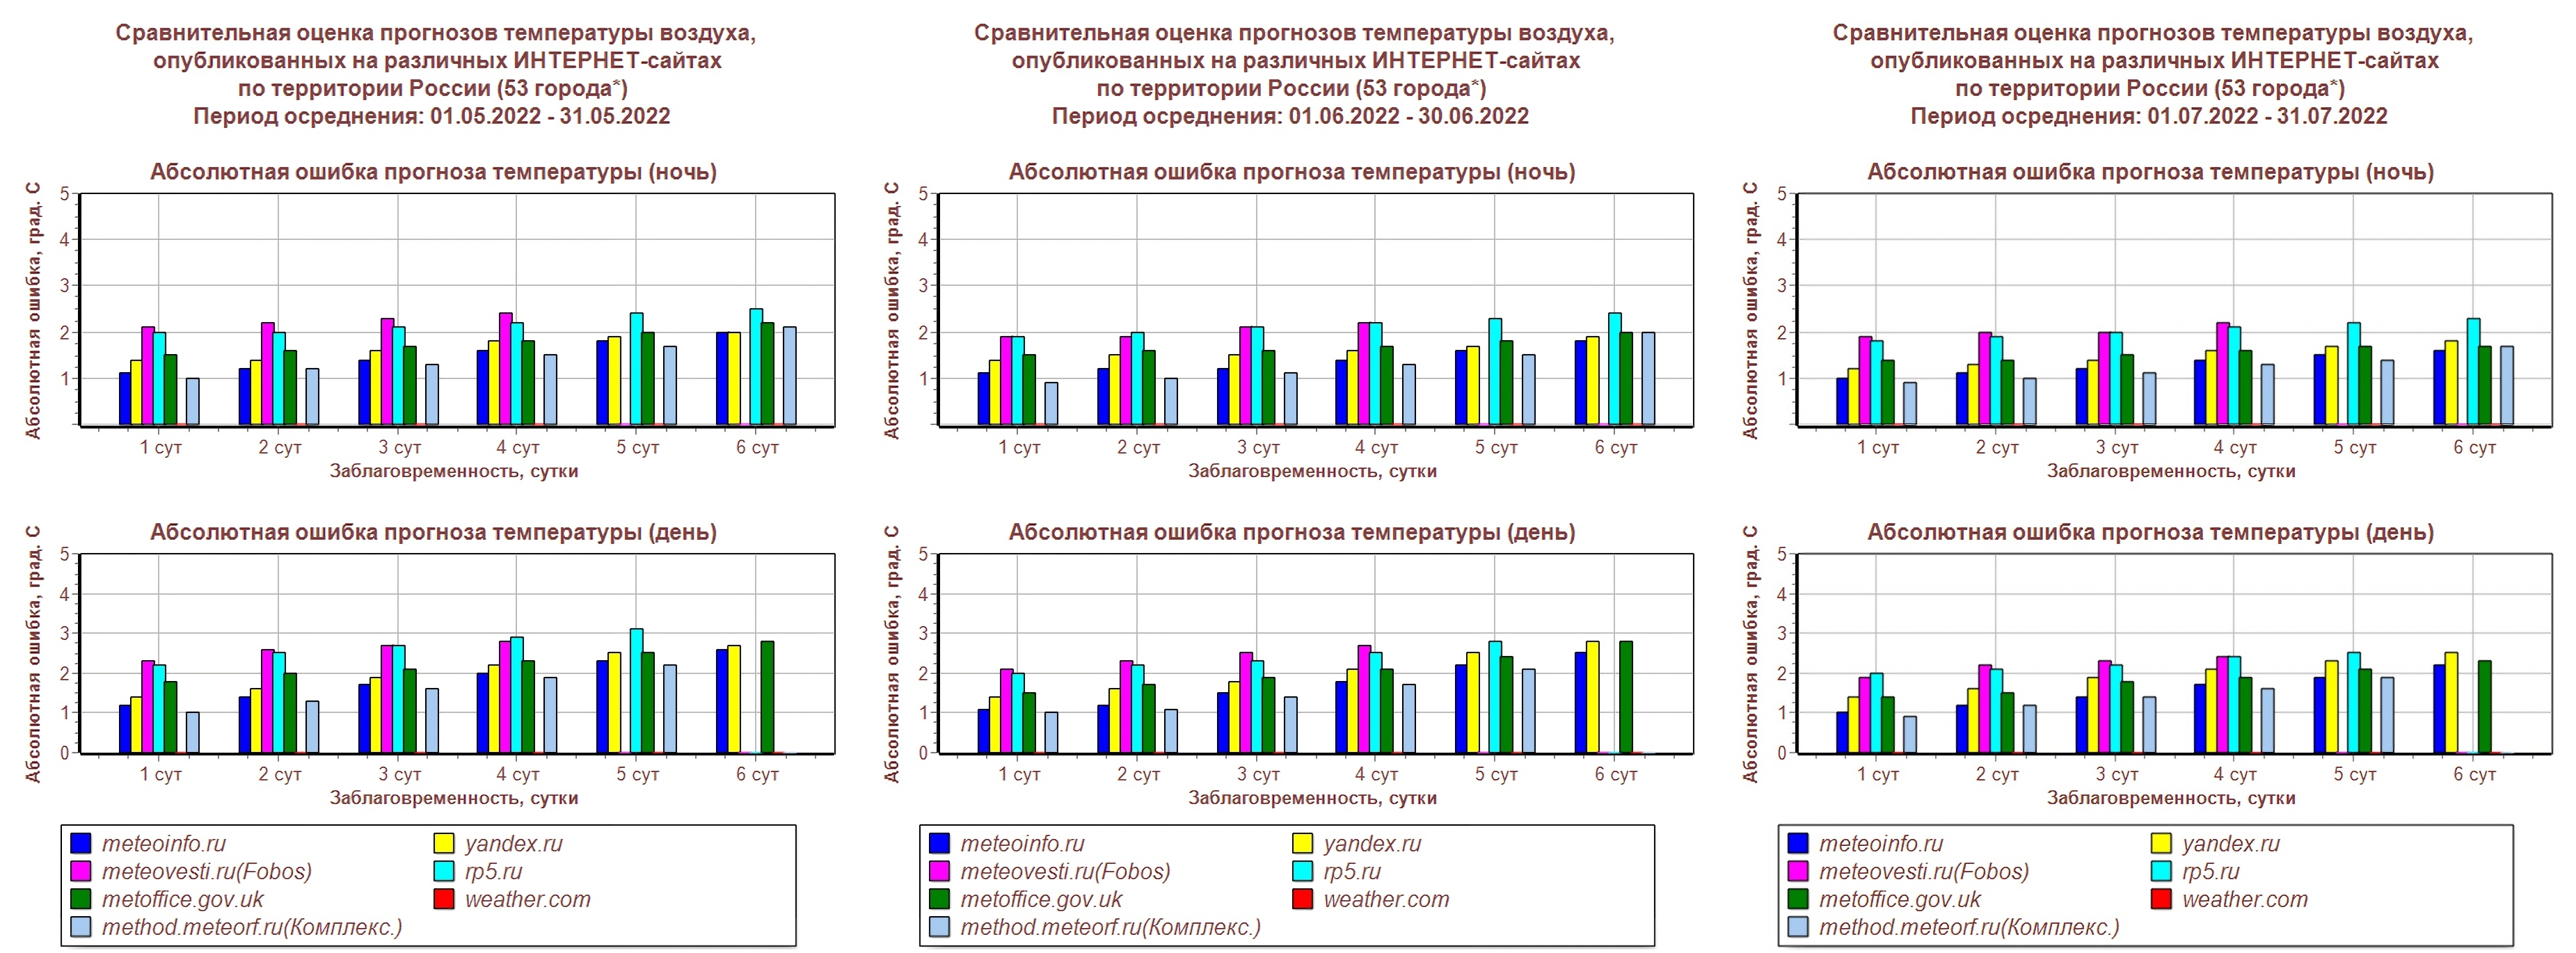 Сравнительная оценка прогнозов температуры воздуха. 53 города России. Гидрометцентр России. Май-июль 2022 года. 